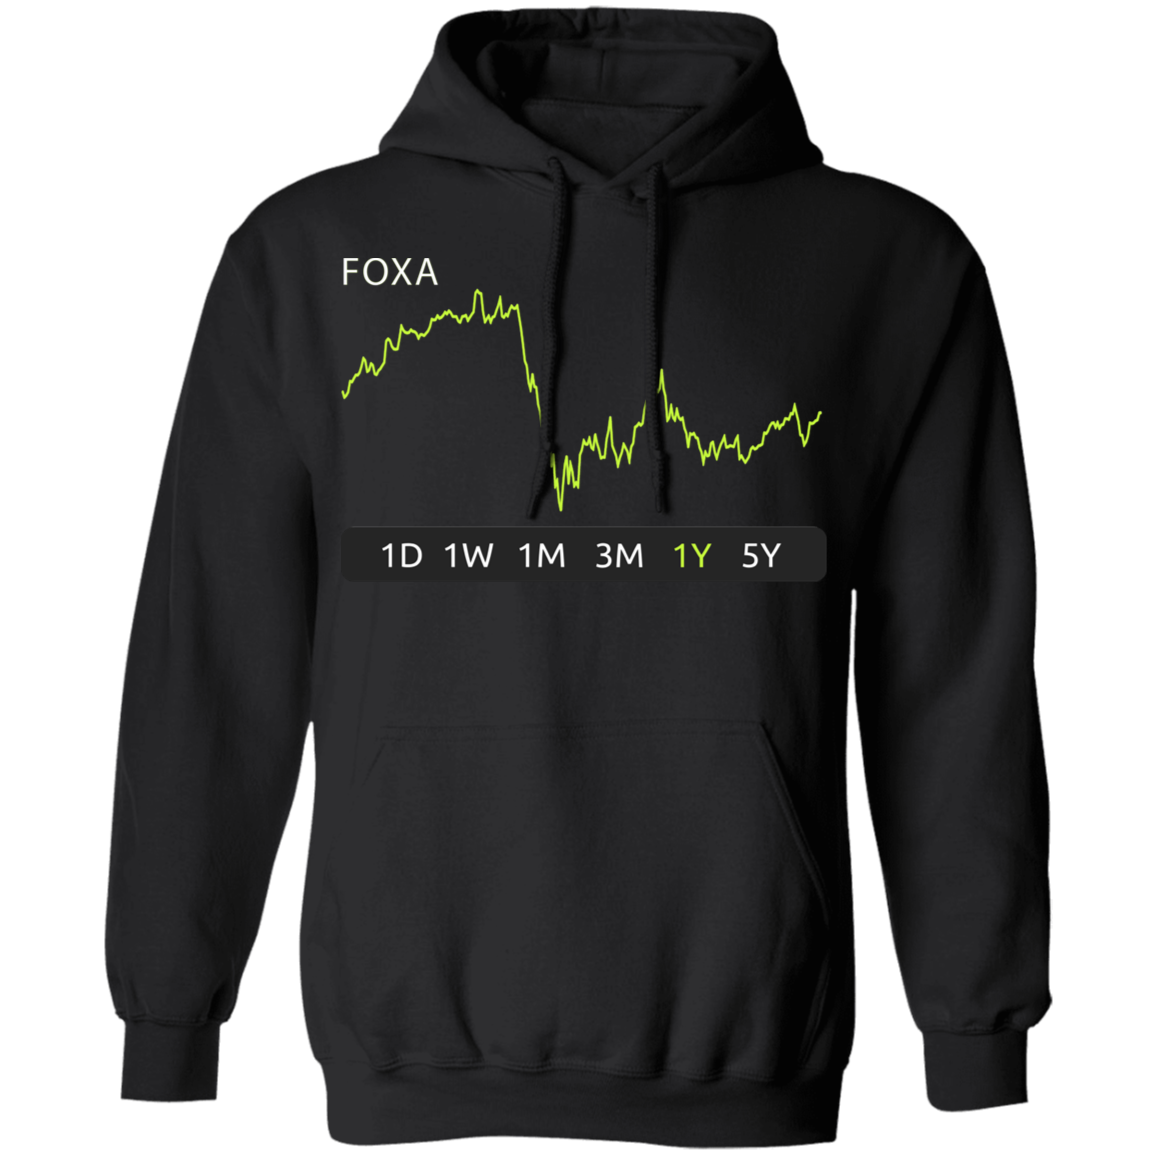 FOXA Stock 1y Pullover Hoodie